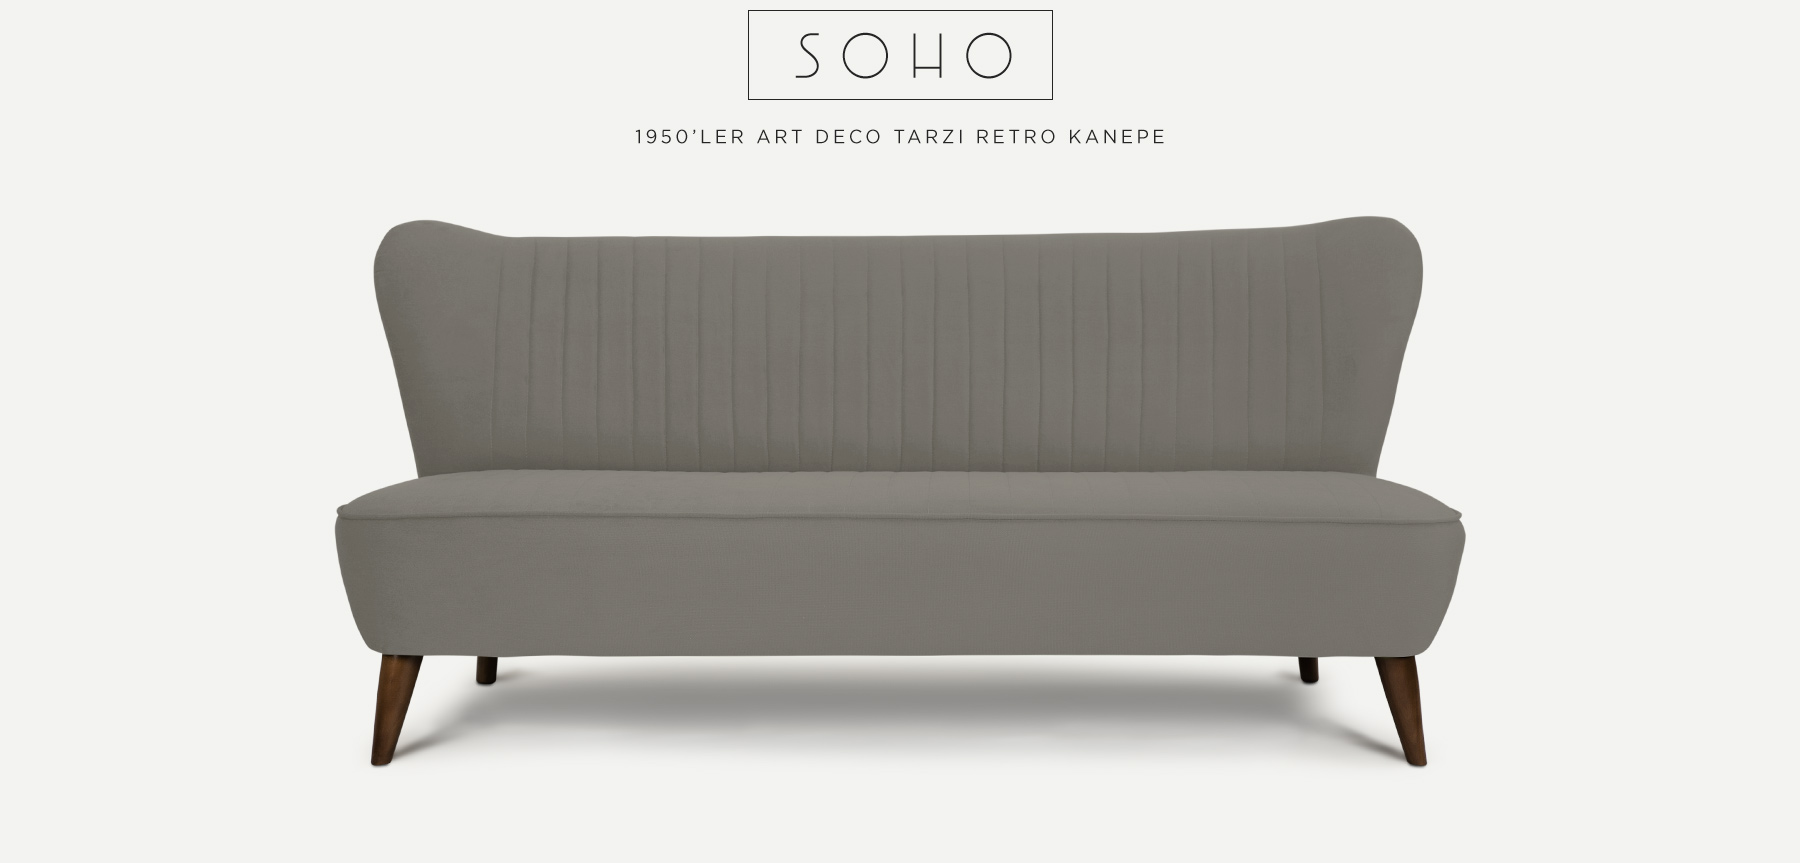 soho™ üçlü gri retro kanepe'in resmi